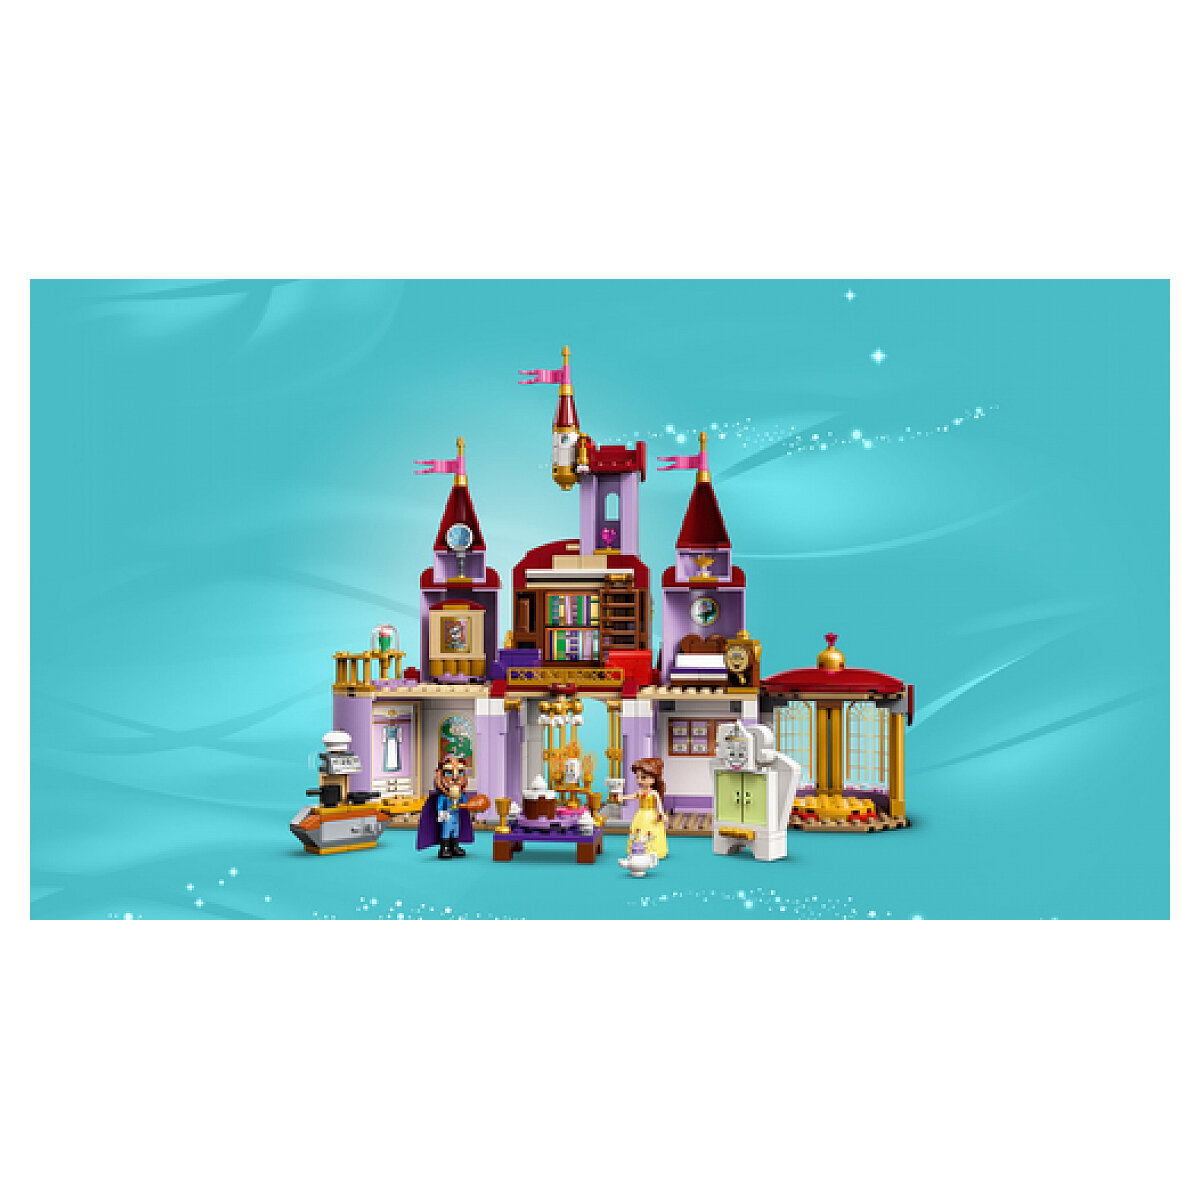 LEGO 43196 Disney Le château de la Belle et la Bête, Jouet du Film Disney  avec Mini Figurines - Dès 6 ans